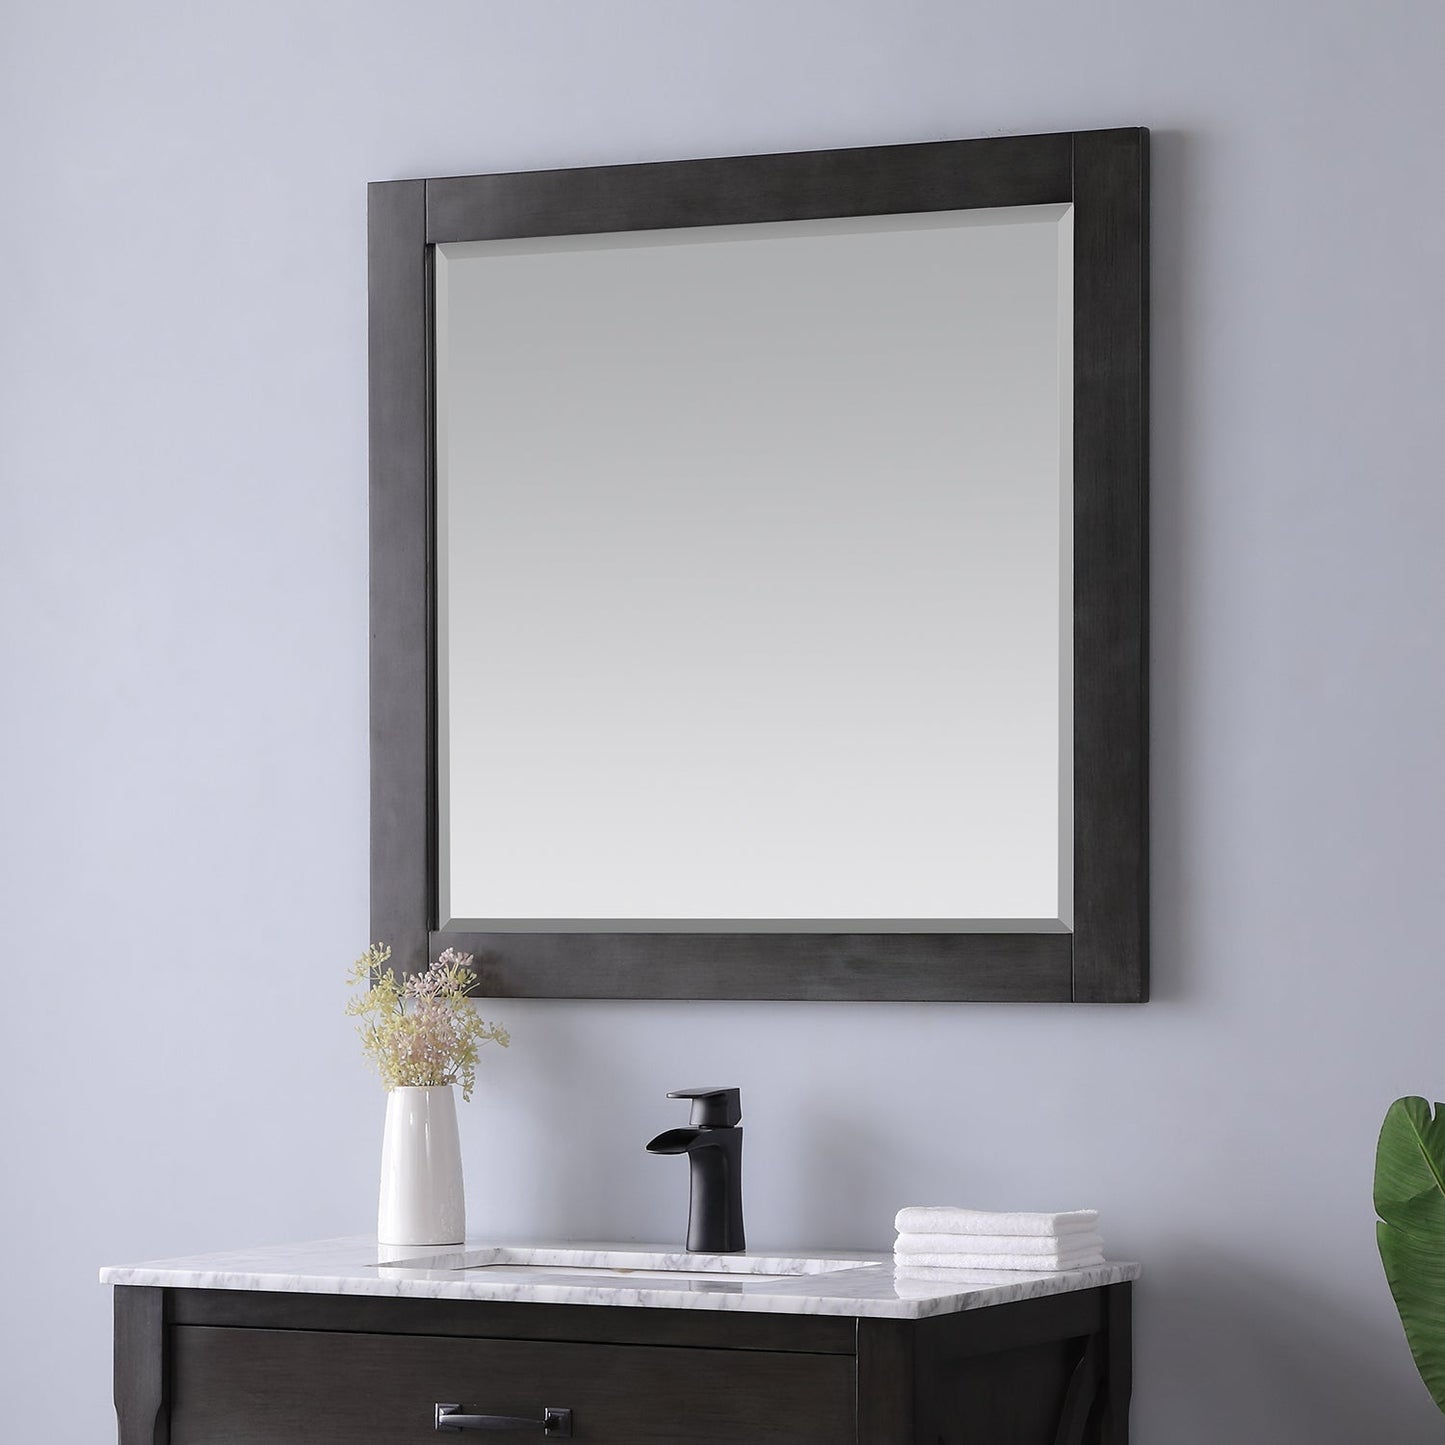 Maribella 34" Rectangular Bathroom Wood Framed Wall Mirror in Rust Black